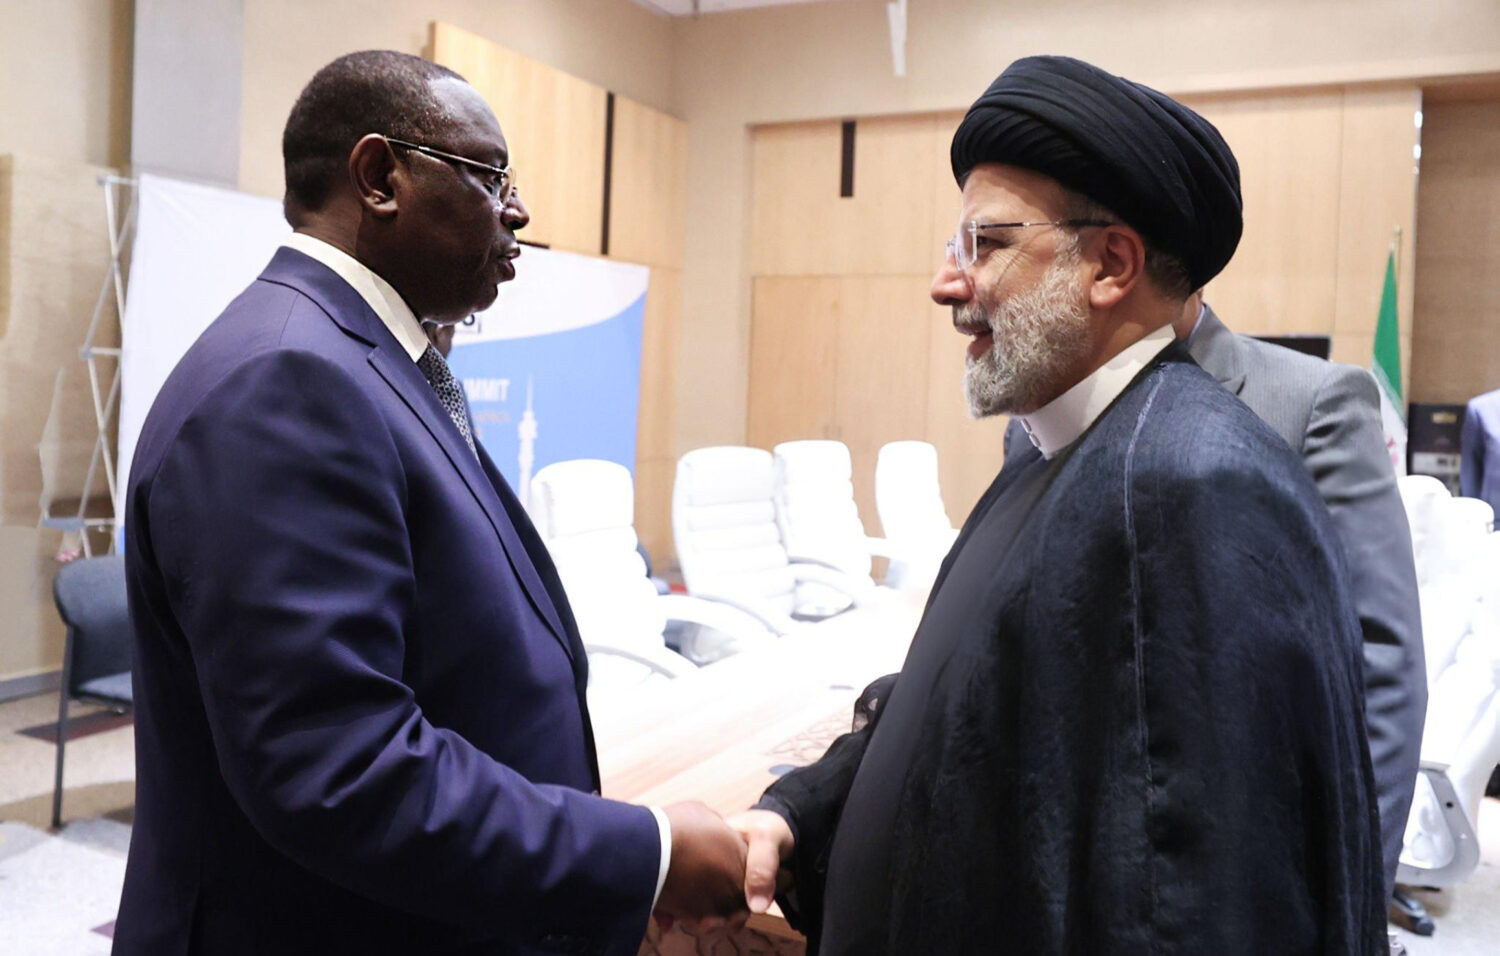 تمدد إيران في إفريقيا ما قصة الاتفاقيات دون بنود معلنة؟ (1)